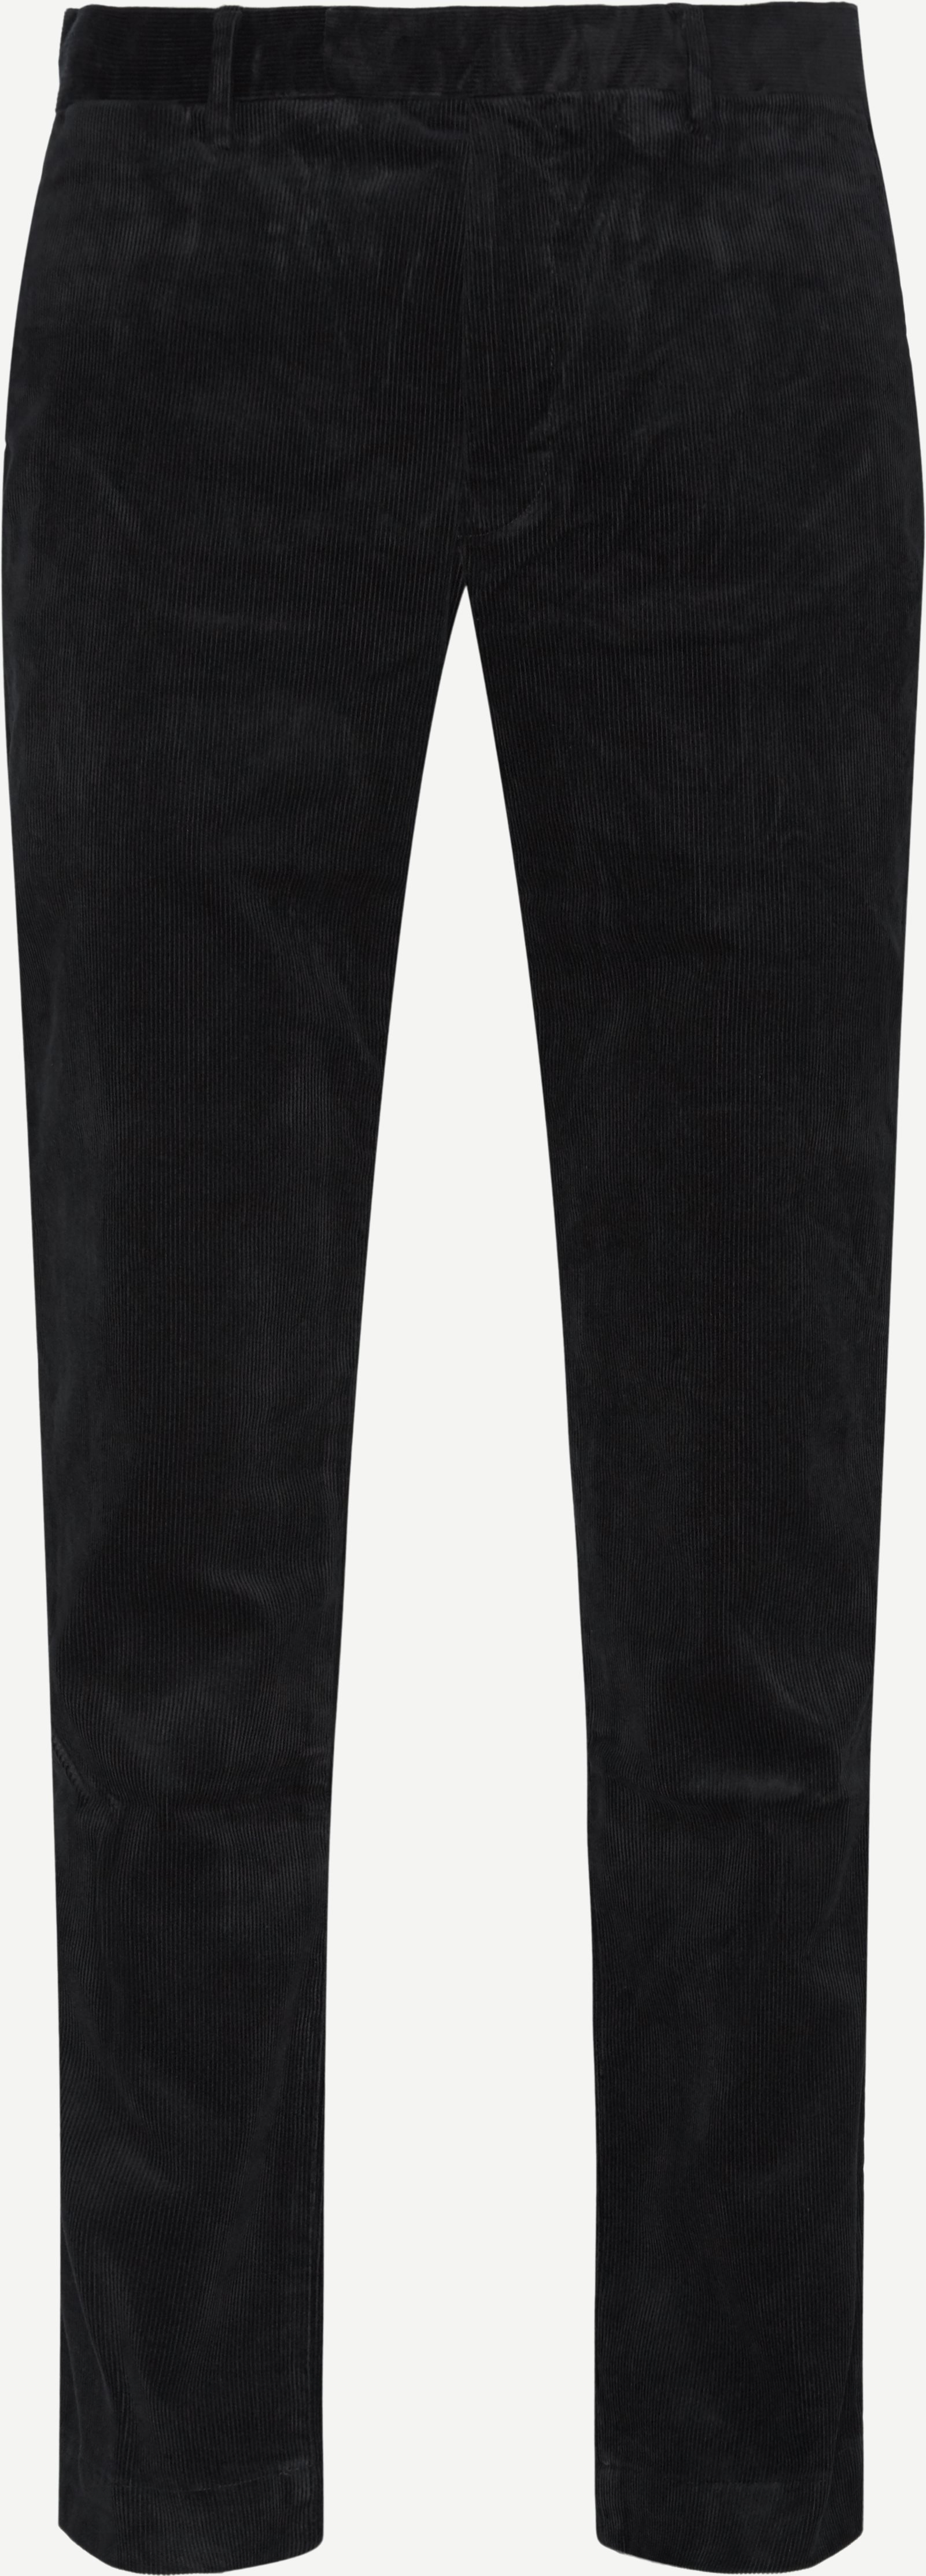 Corduroy Slim Pants - Bukser - Slim fit - Sort